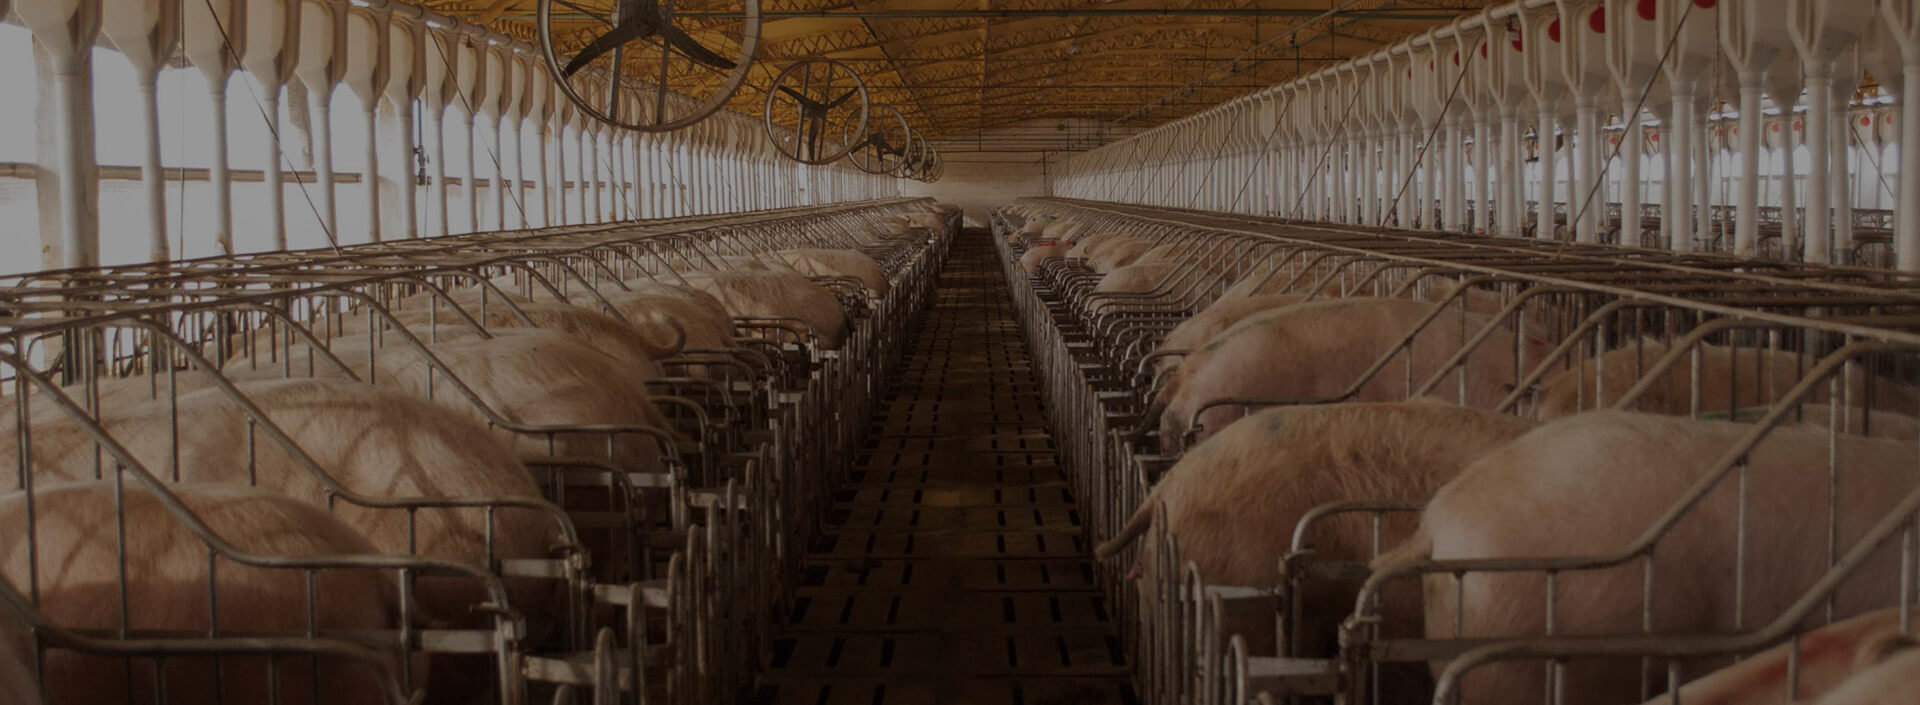 Grantec Equipamientos para granjas con cerdos | Cachorras, Gestación, Maternidad, Destete, Engorde y Wean to Finish.